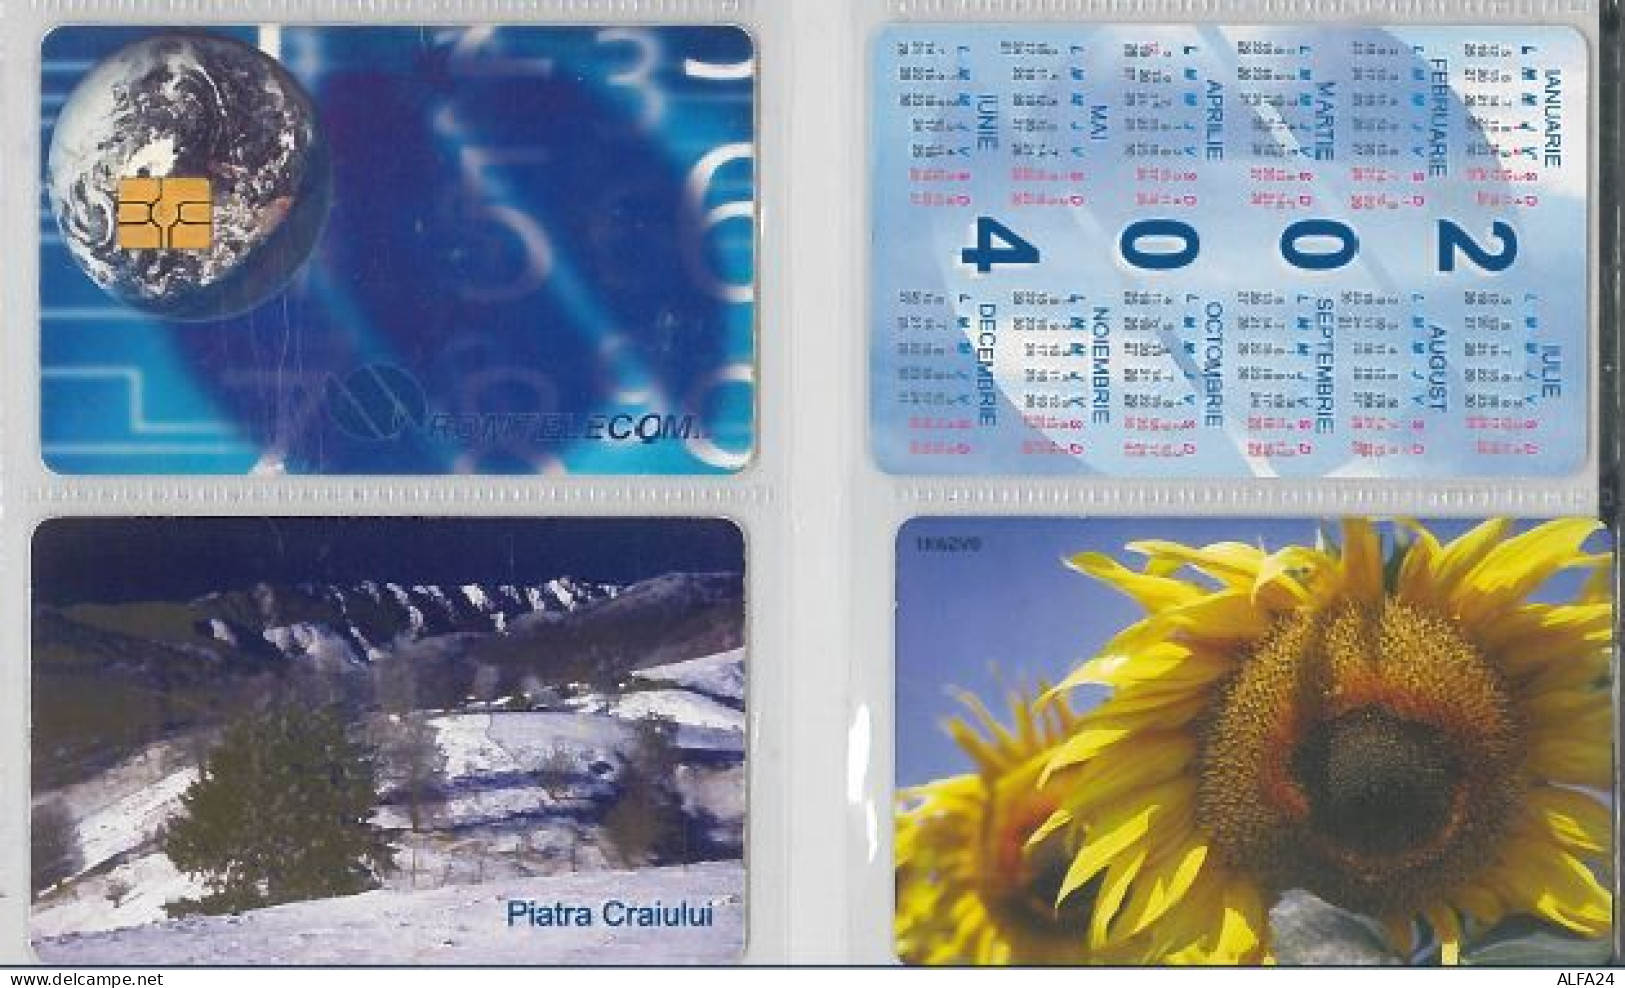 LOT 4 PHONE CARDS ROMANIA (ES4 - Romania